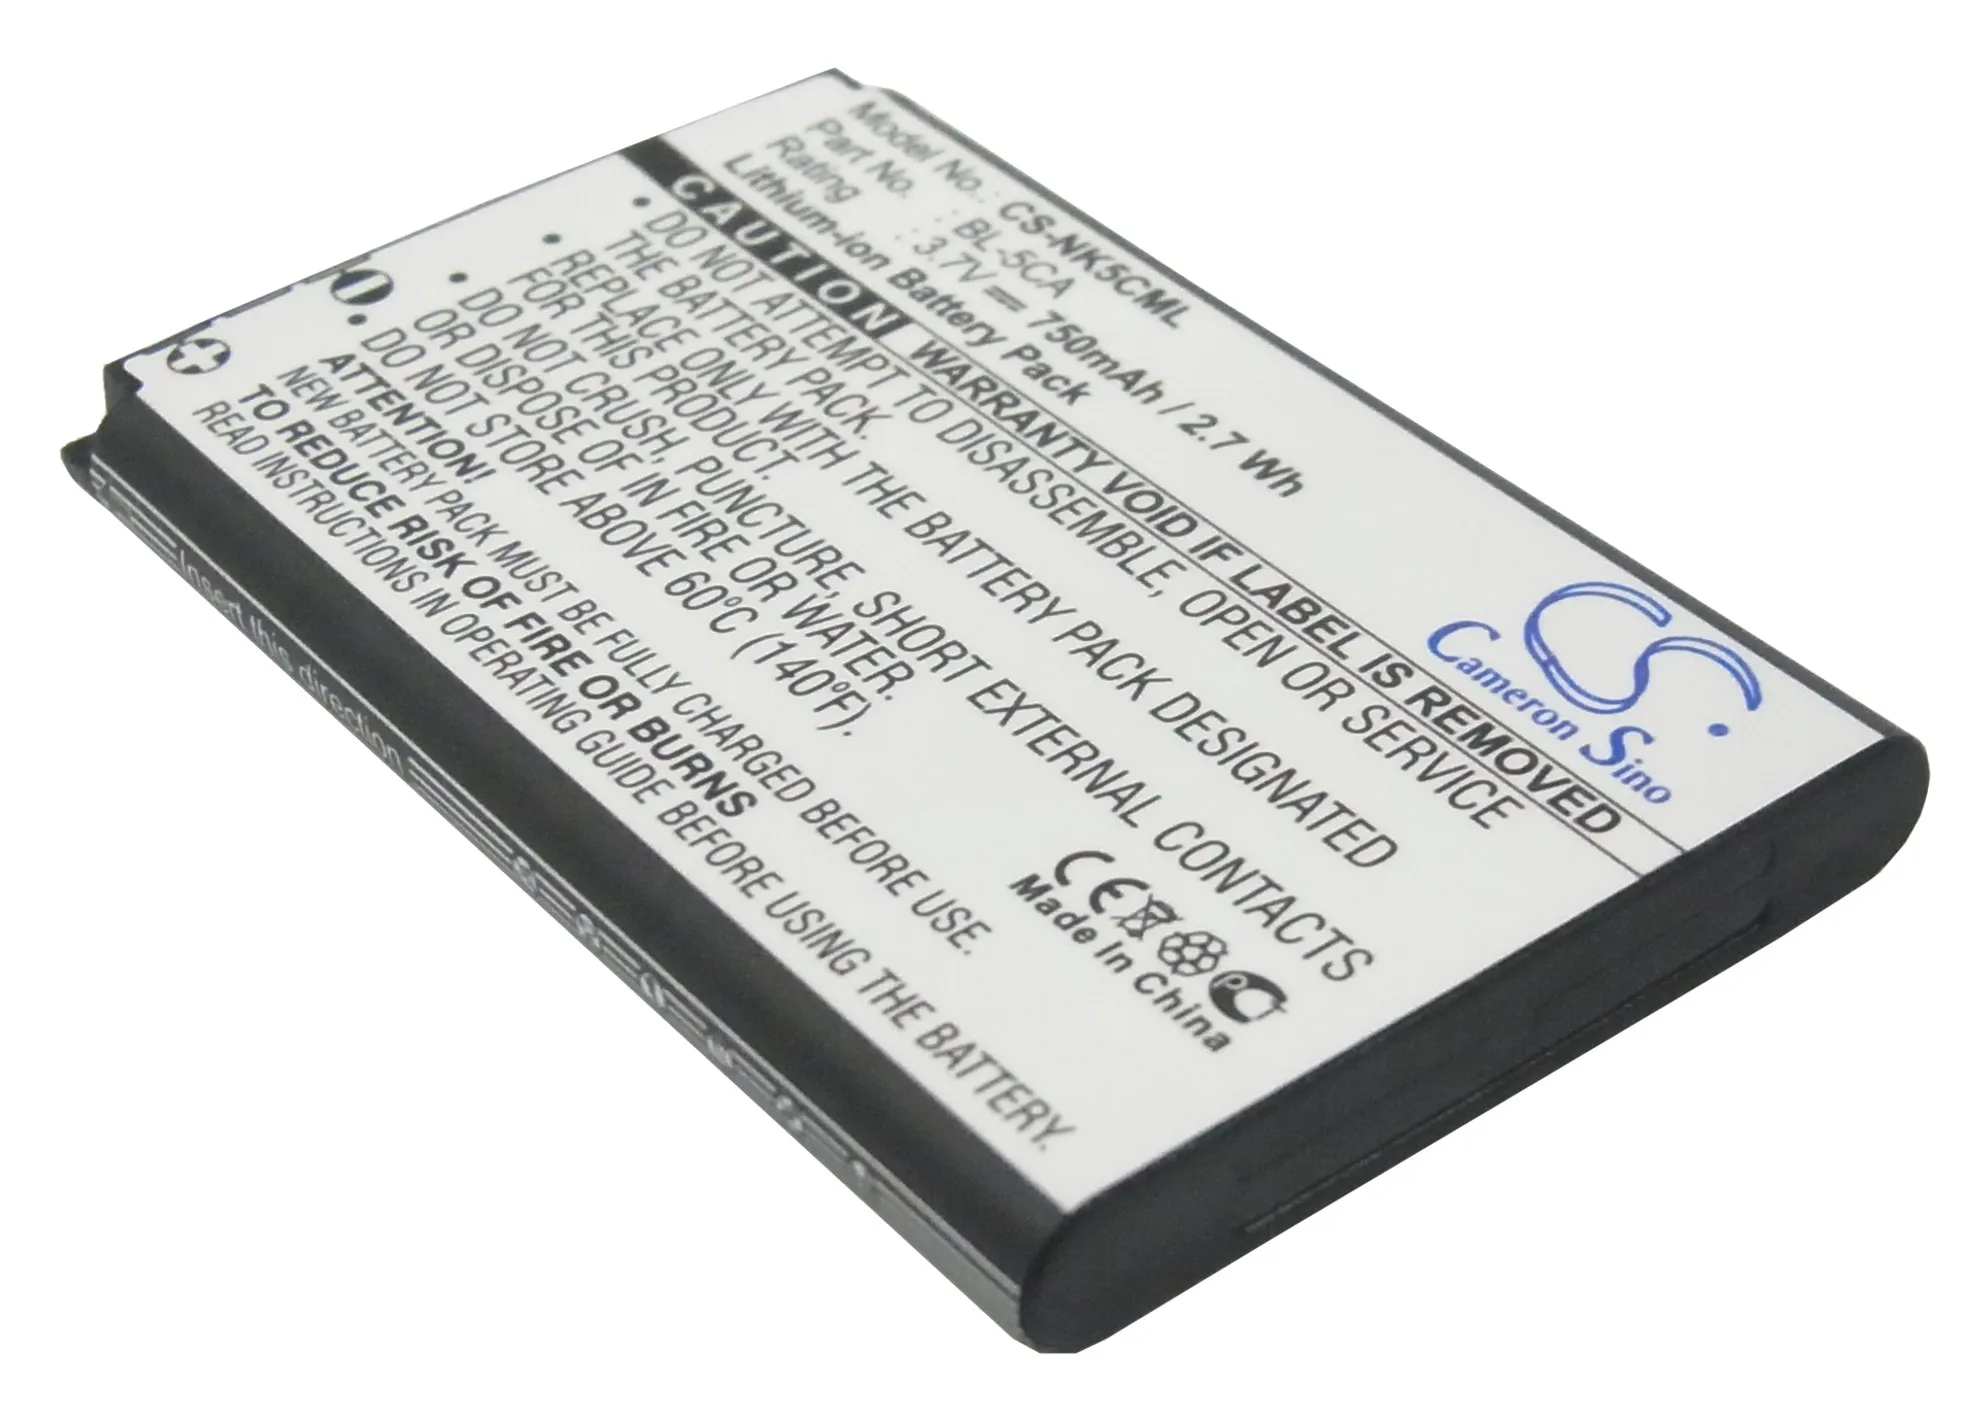 

Кэмерон китайско штрих-кода заменитель сканера Li-Ion Батарея 750 мА-ч для AP XL915, XL-915 Бесплатные инструменты